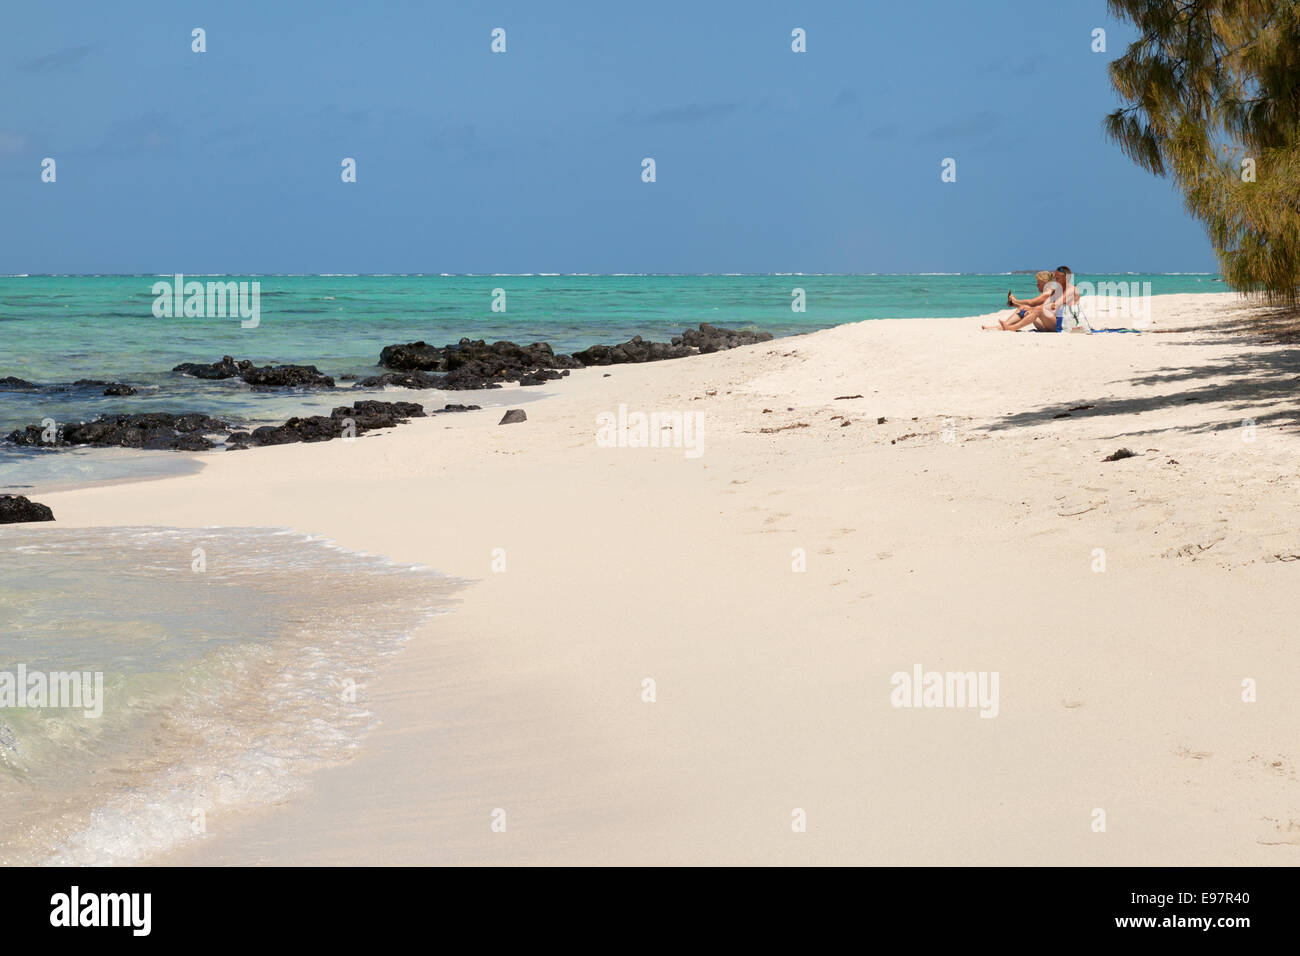 Un couple sur la plage de sable blanc, l'Île aux Cerfs, île Maurice, Côte est de l'Afrique Banque D'Images